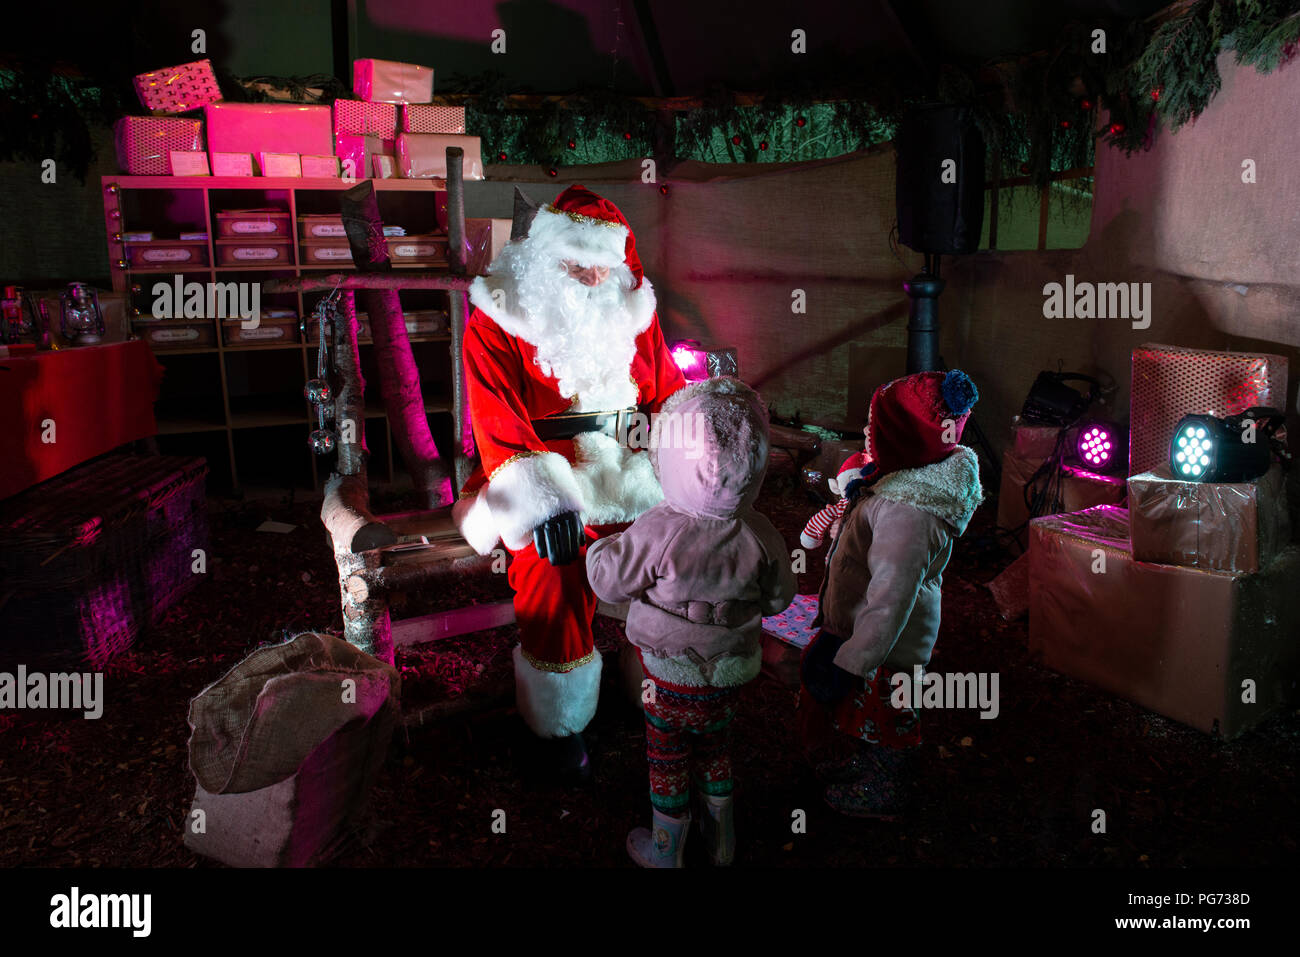 Junge Mädchen, aufgeregt Besuchen Sie den Weihnachtsmann. Quelle: Lee Ramsden/Alamy Stockfoto